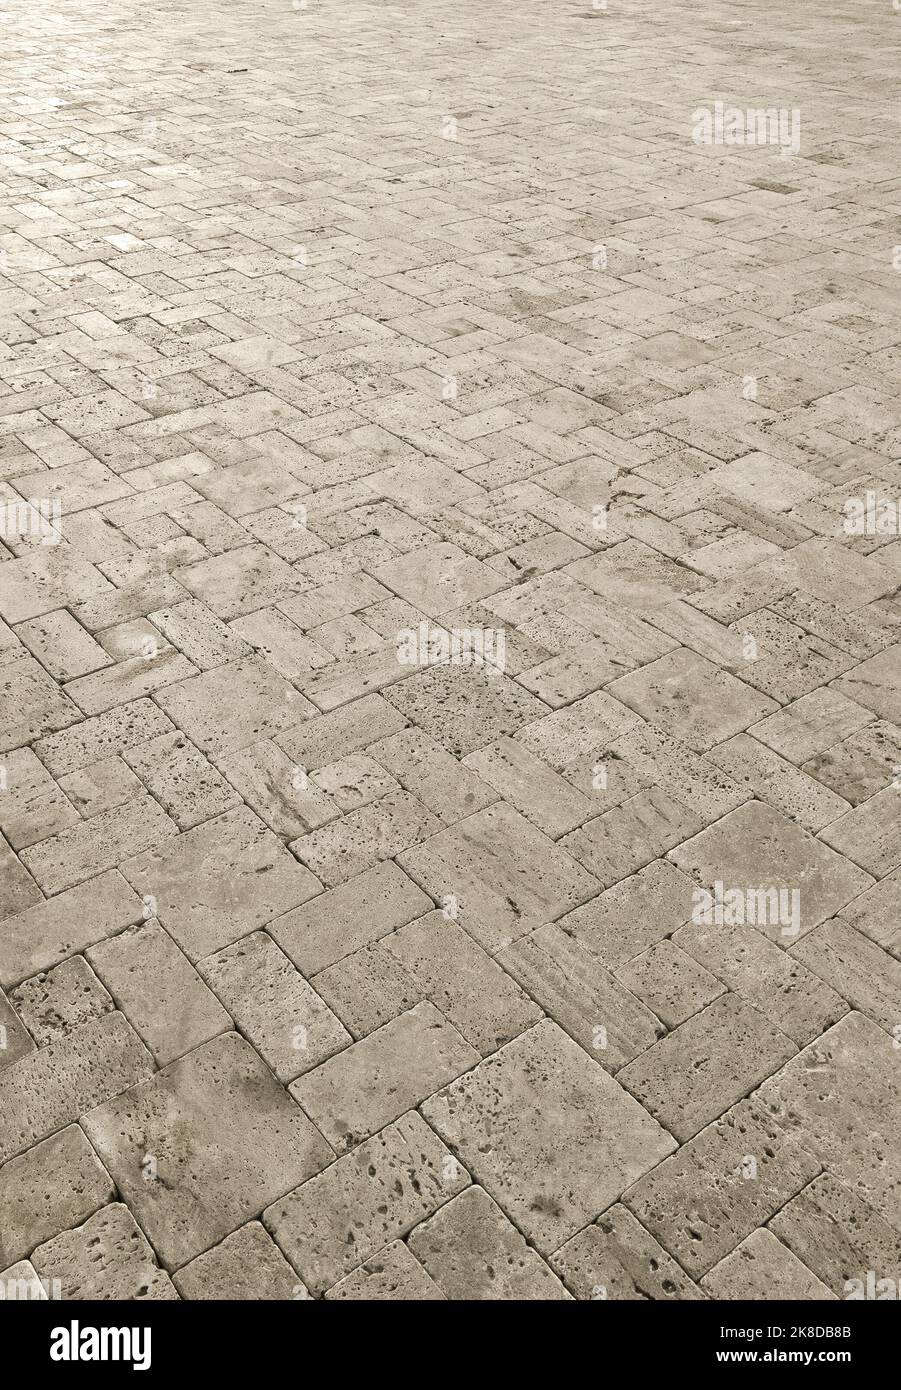 sidewalk pavement pavestone paving bricks stone bricks, closeup Stock Photo